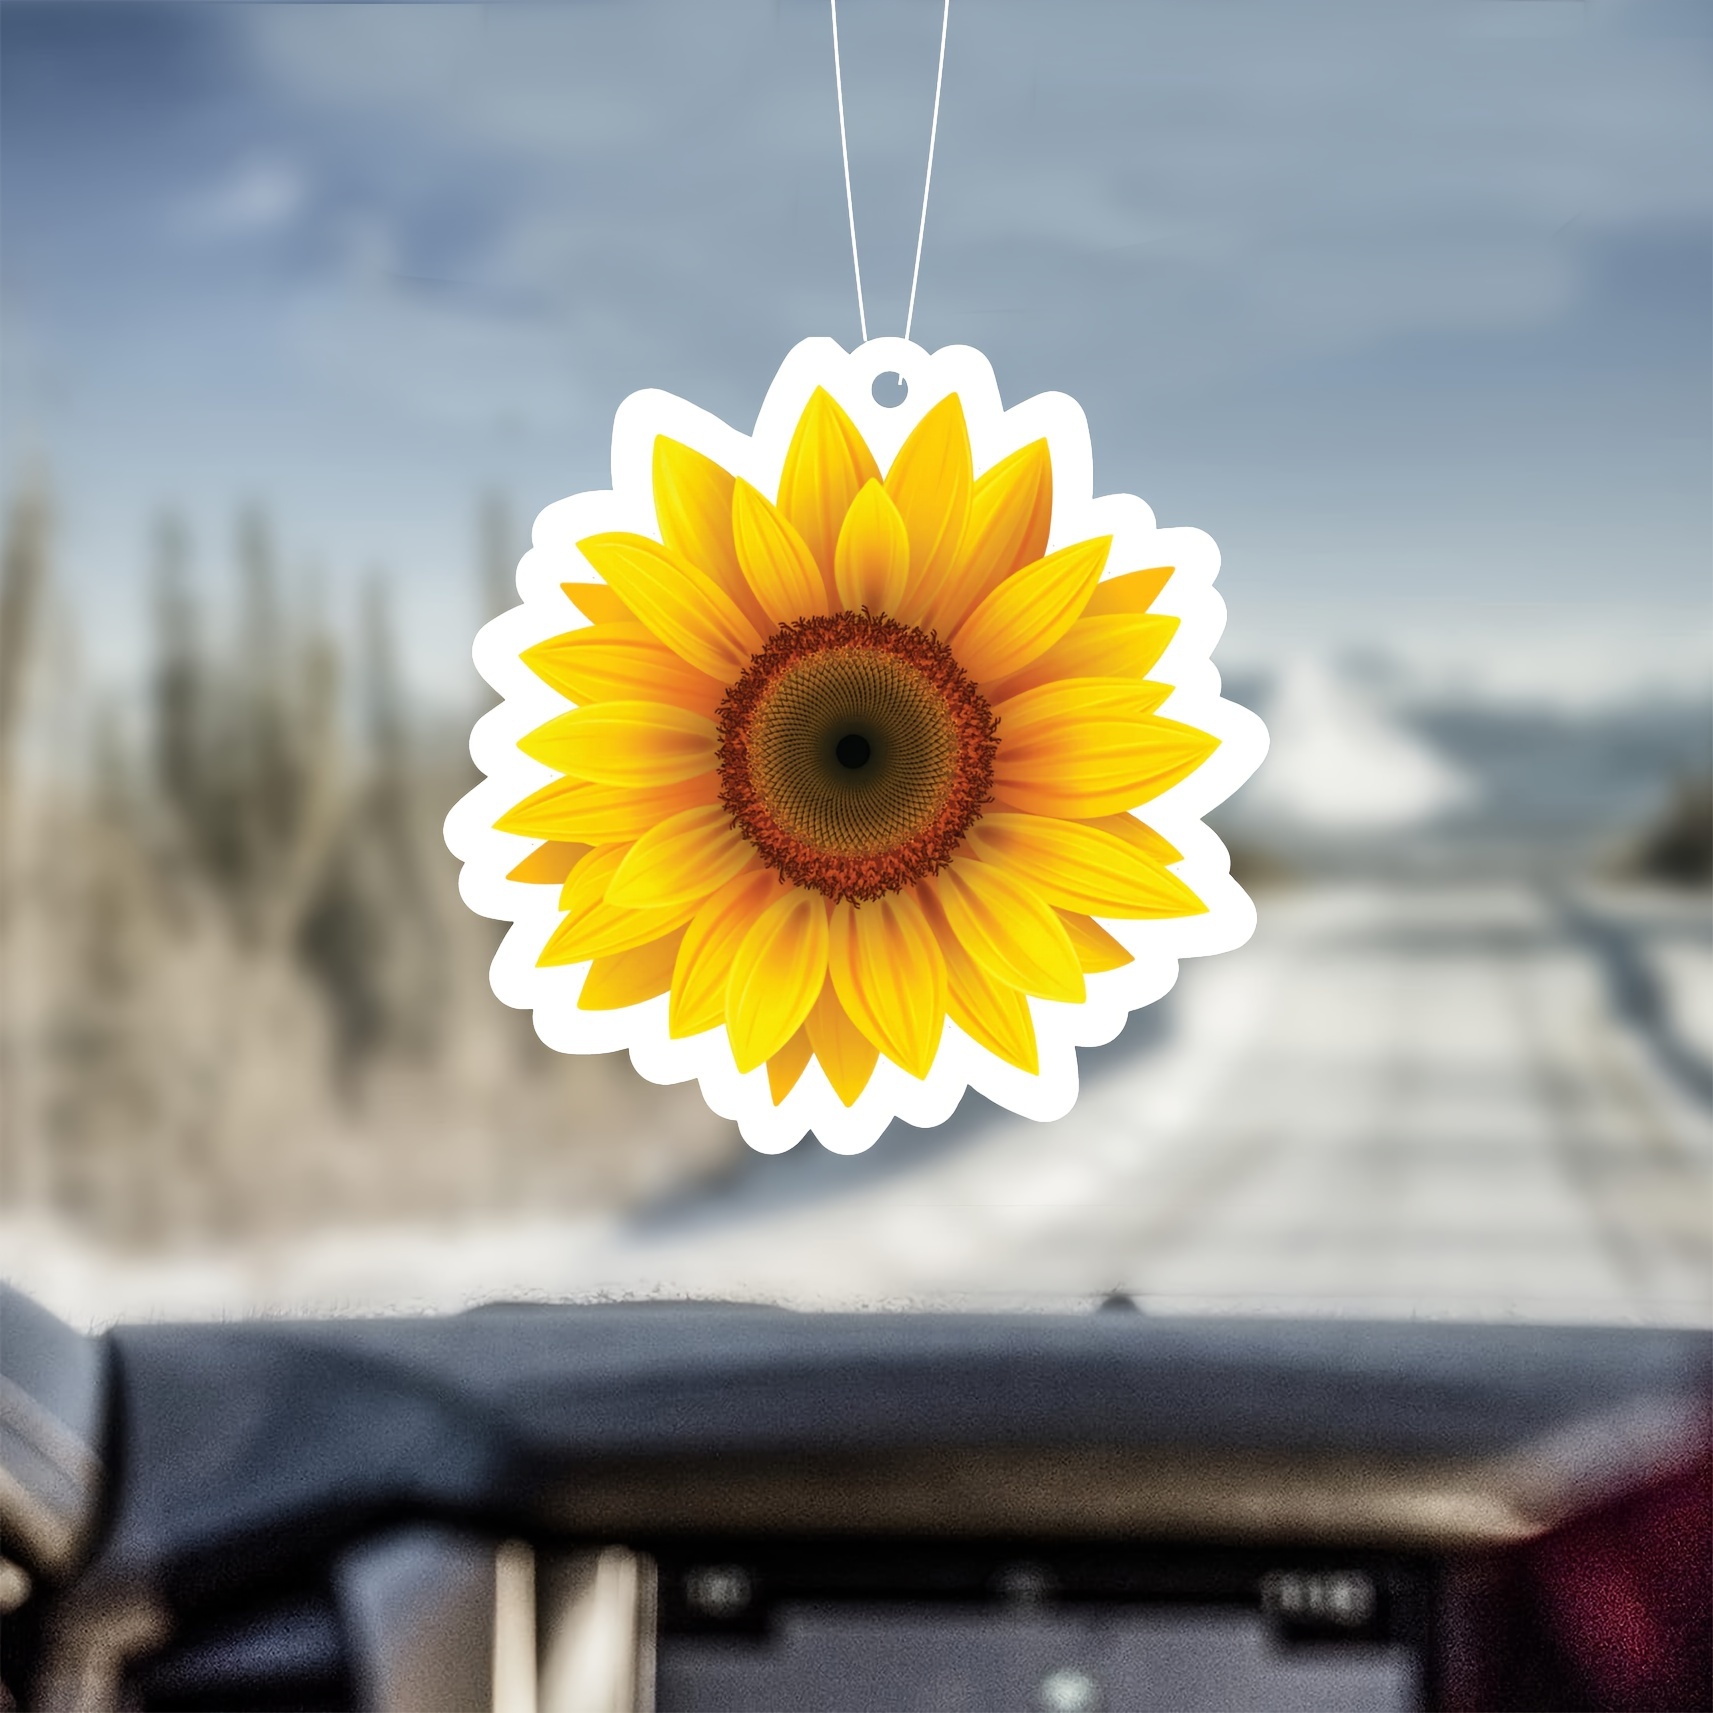 Sunflower Autozubehör - Kostenloser Versand Für Neue Benutzer